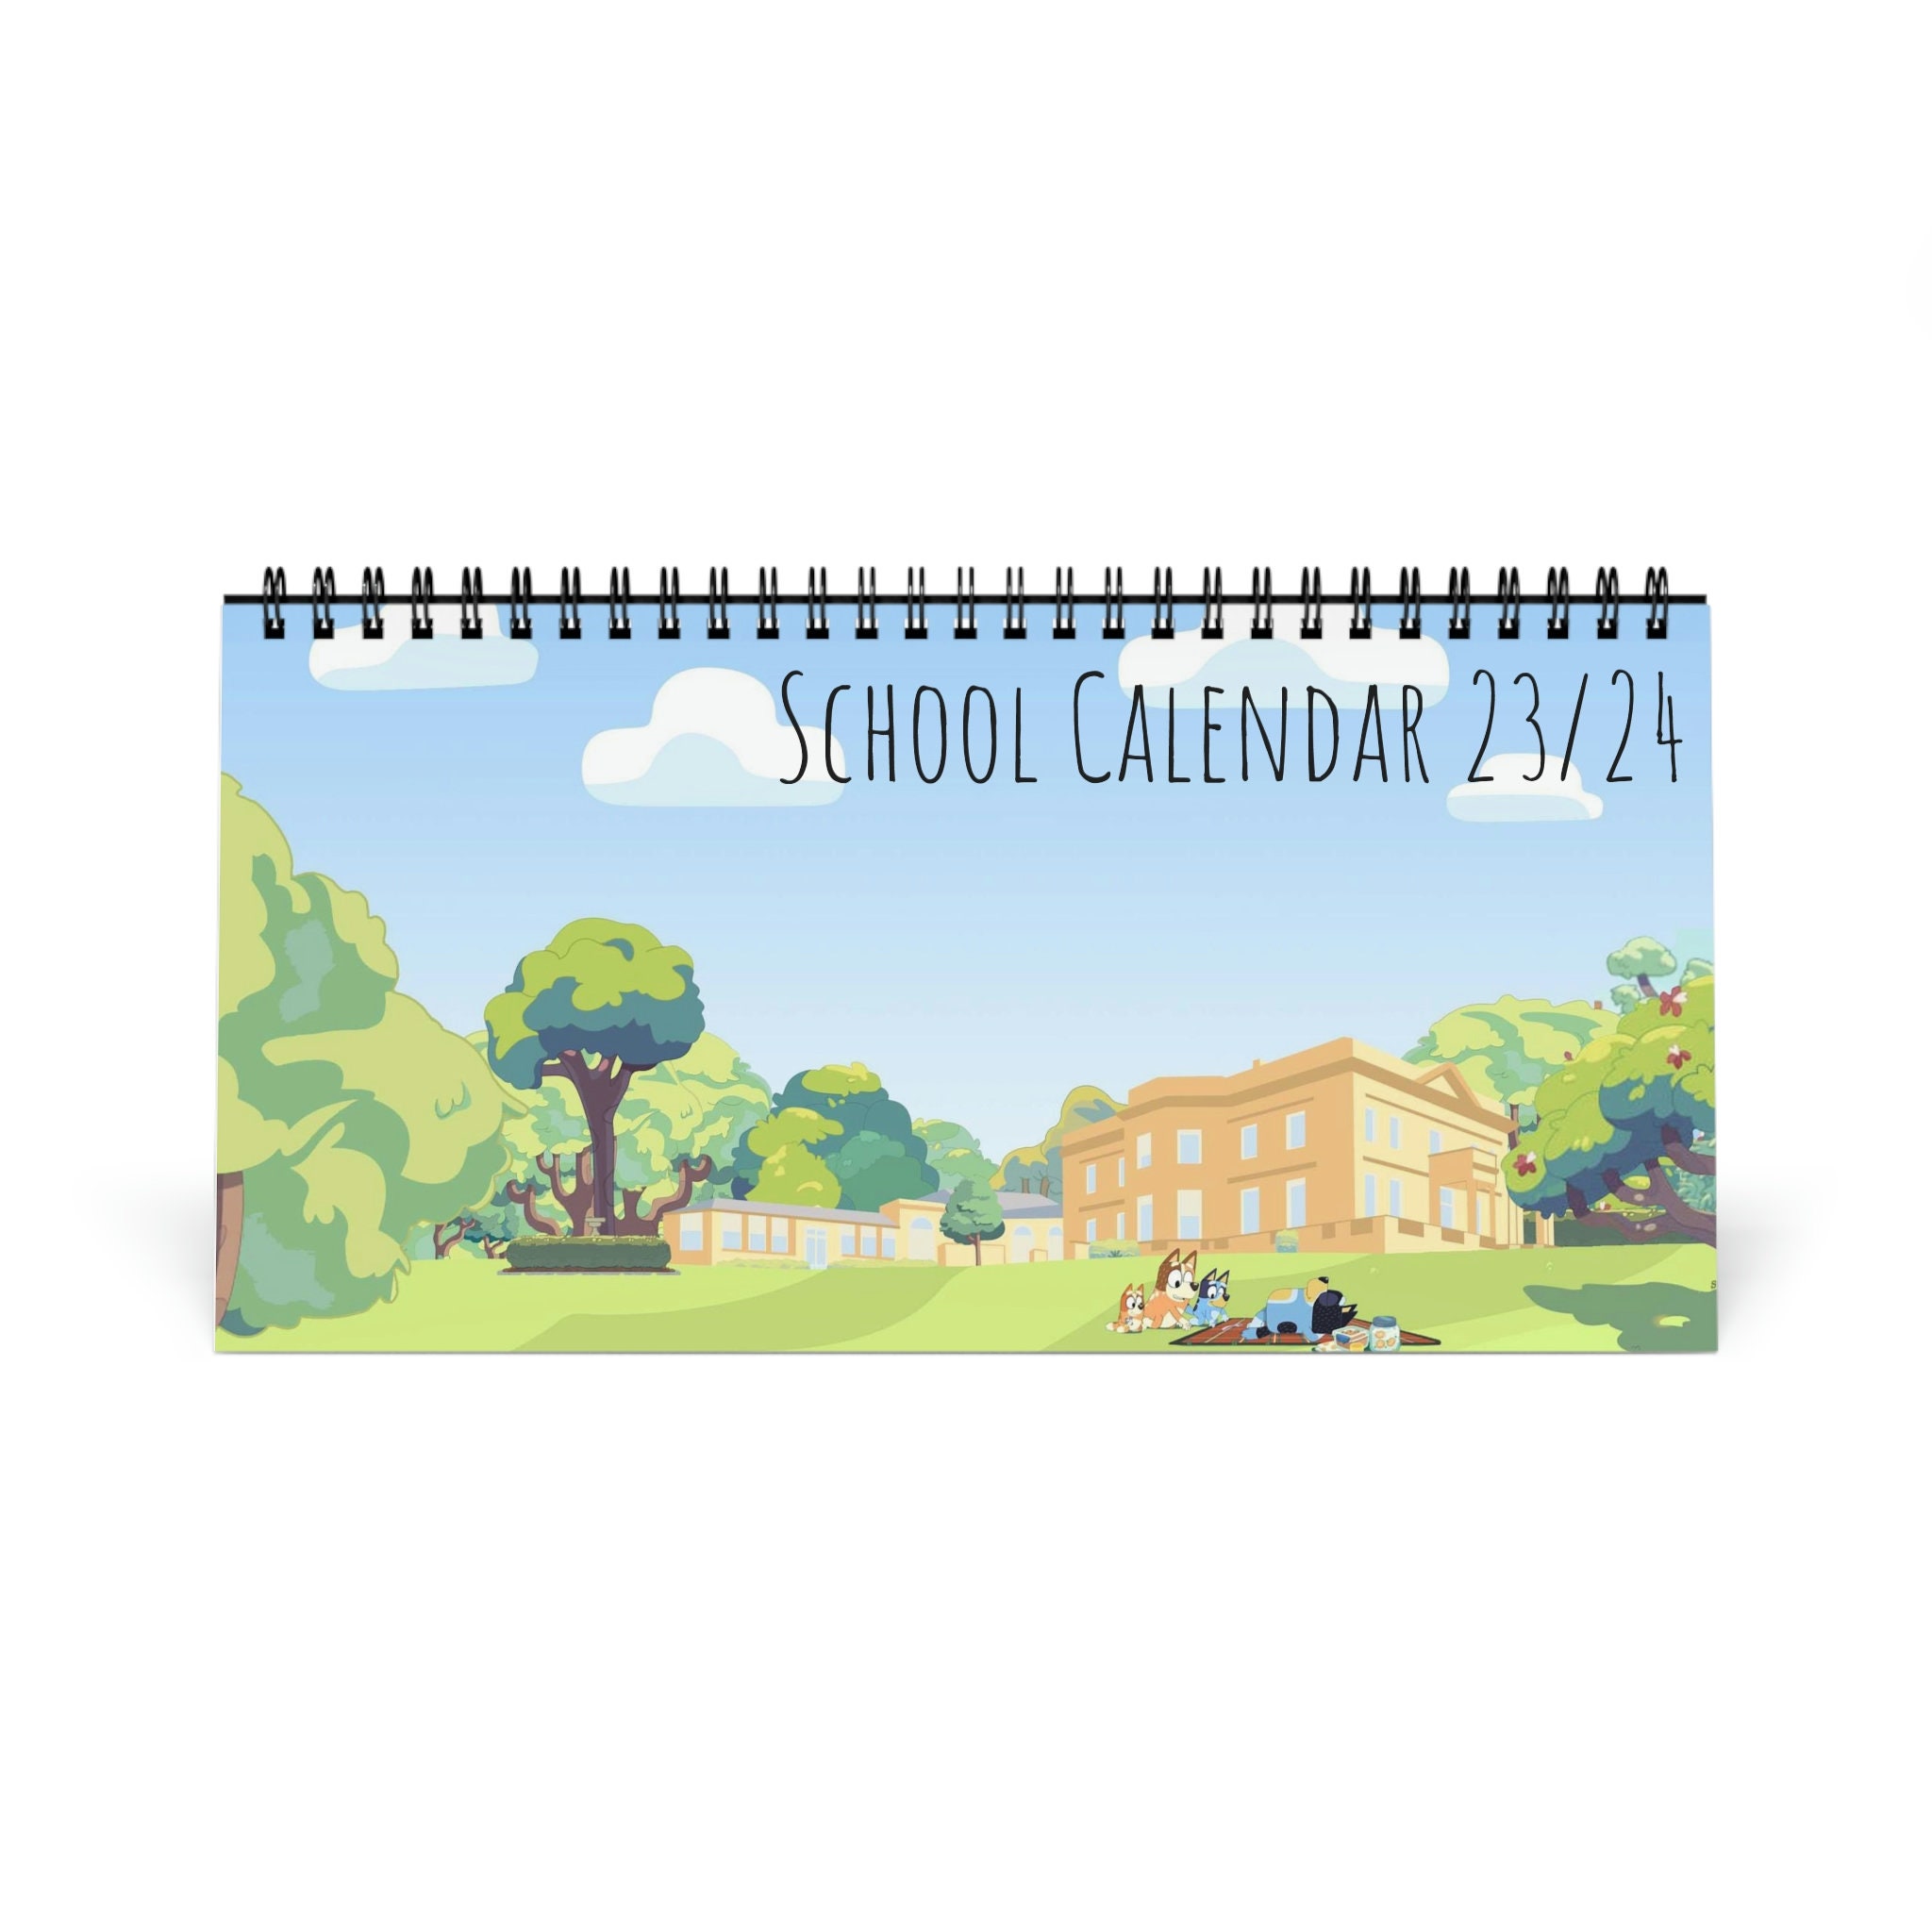 Buy Bluey Family Planner Calendar 2024